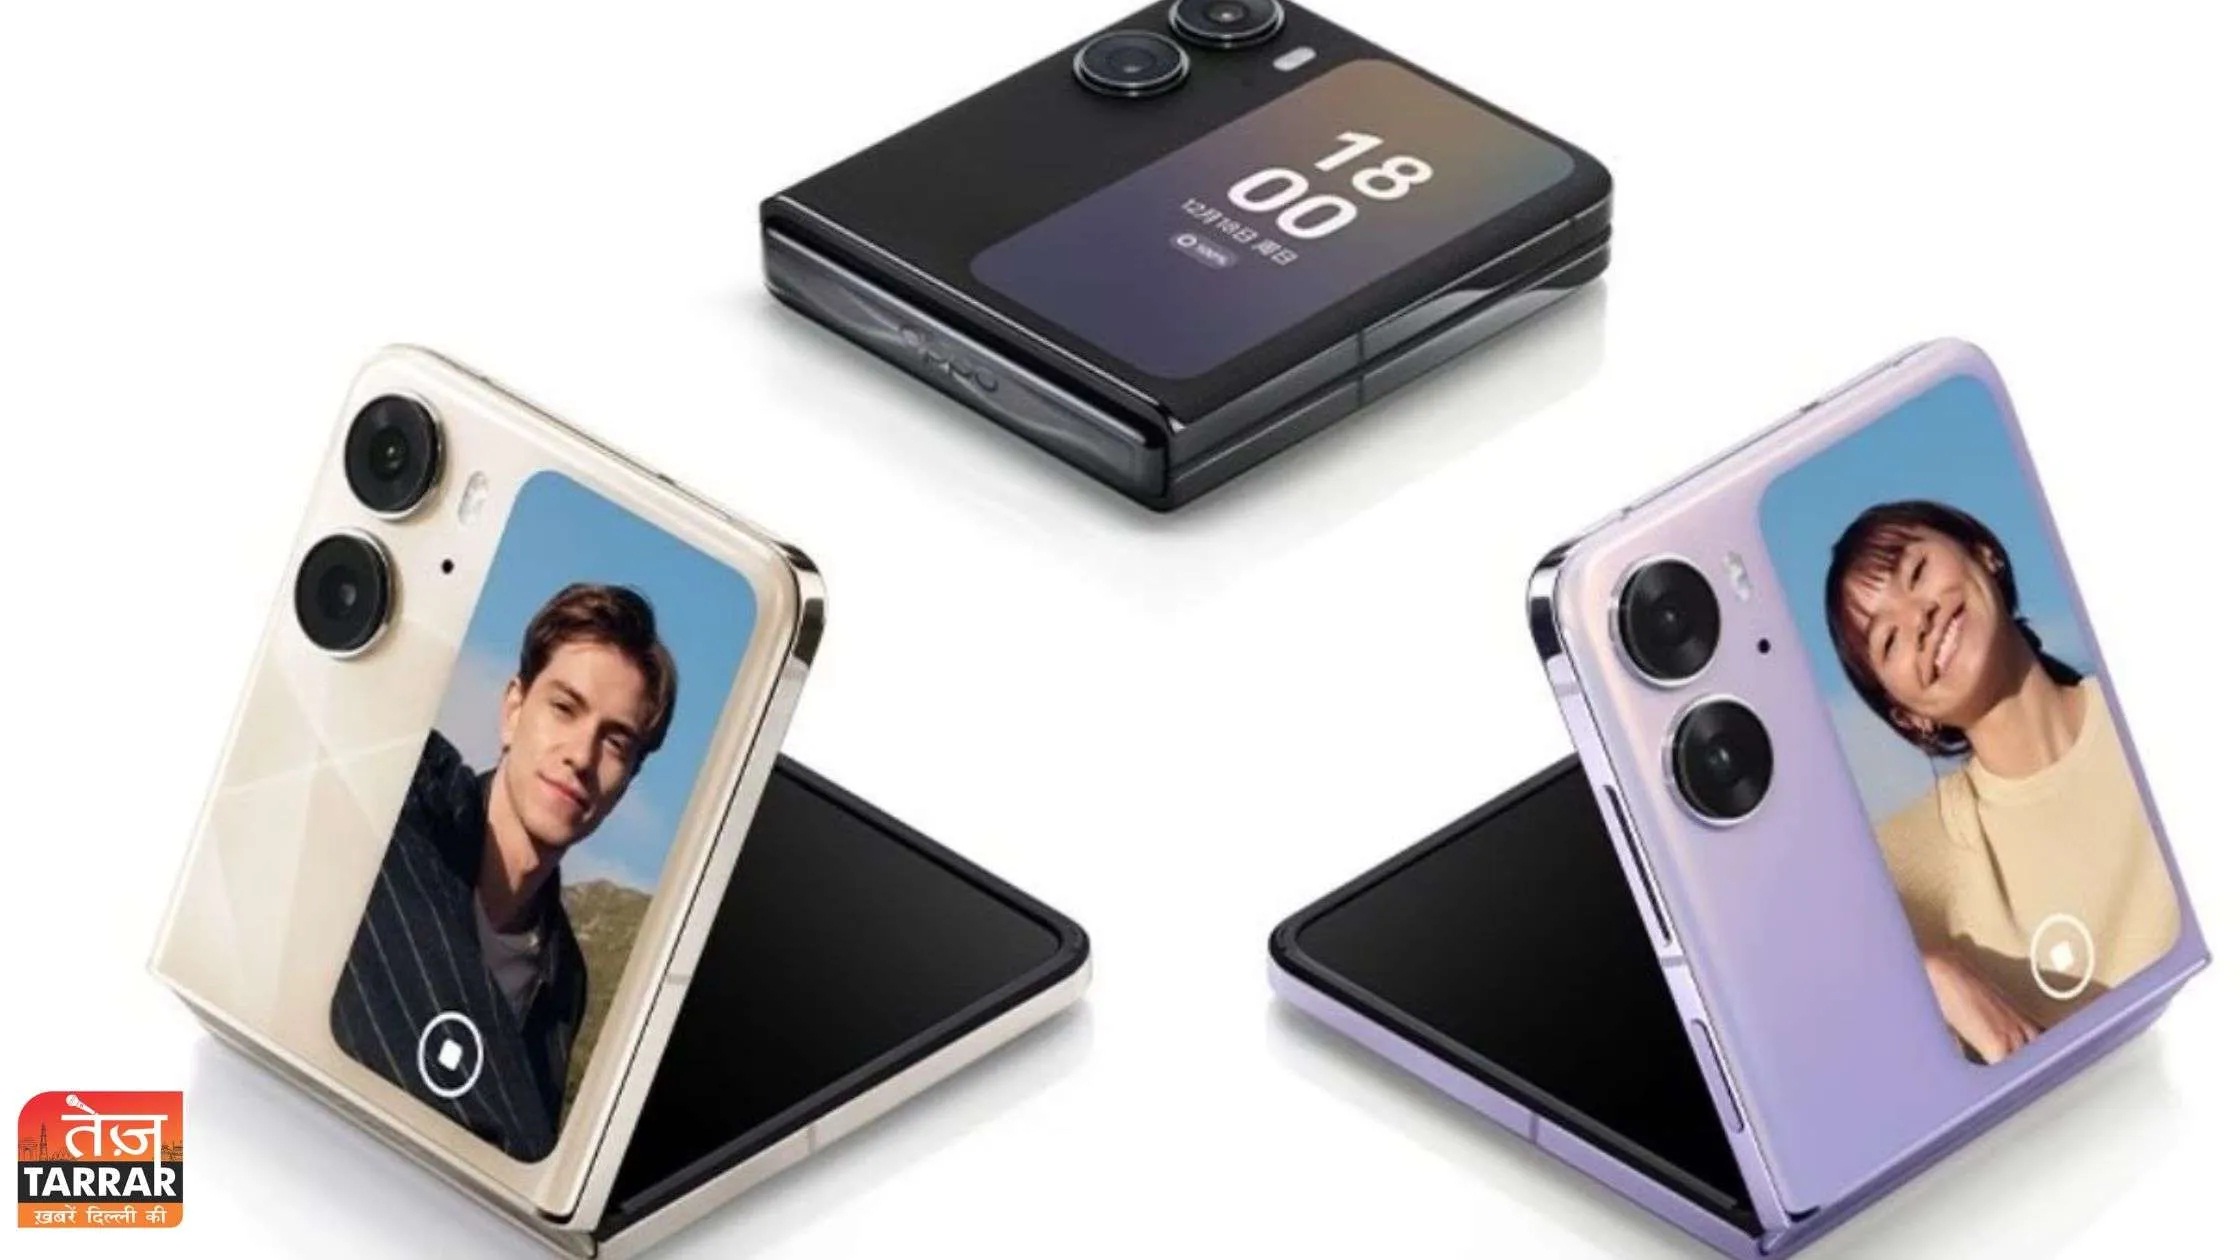 Samsung का आधी कीमत पर मिल रहा मुड़ने वाला फोन, प्रीमियम स्मार्टवॉच पर भी 50% छूट